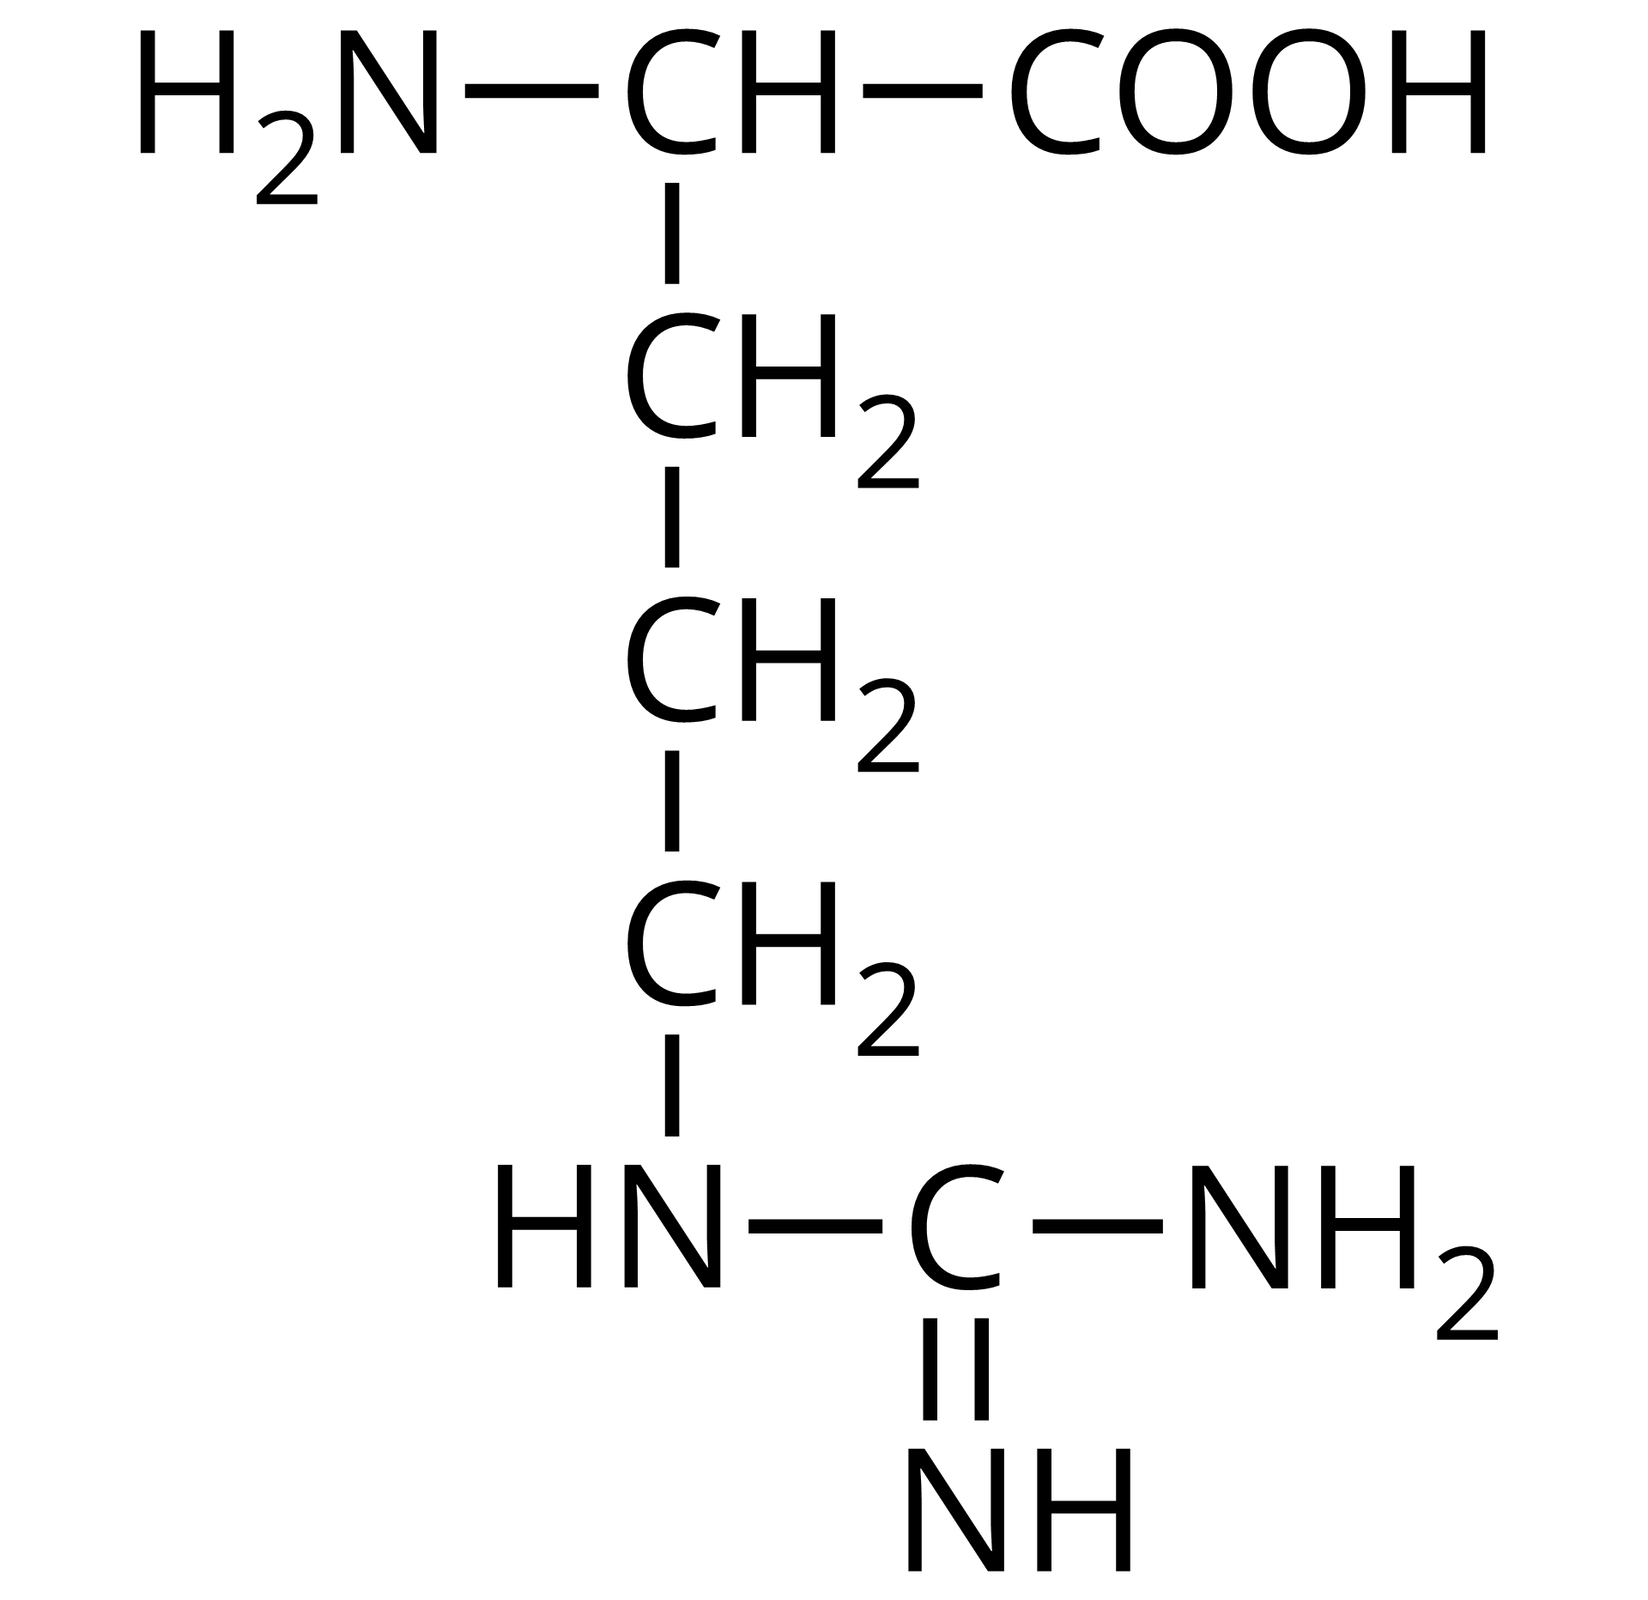 Na ilustracji jest wzór półstrukturalny: od prawej strony do lewej - grupa COOH łączy się z grupą CH. Ta w lewo łączy się z grupą aminową pierwszorzędową, a w dół z grupą metylenową. Grupa metylenowa łączy się na dole z kolejną grupą metylenową. Ta łączy się z następną grupą metylenową. Grupa metylenowa w prawo łączy się z NH, które z kolei łączy się z atomem węgla. Atom węgla łączy się u góry wiązaniem podwójnym z NH, a po prawej stronie z grupą aminową pierwszorzędową. 